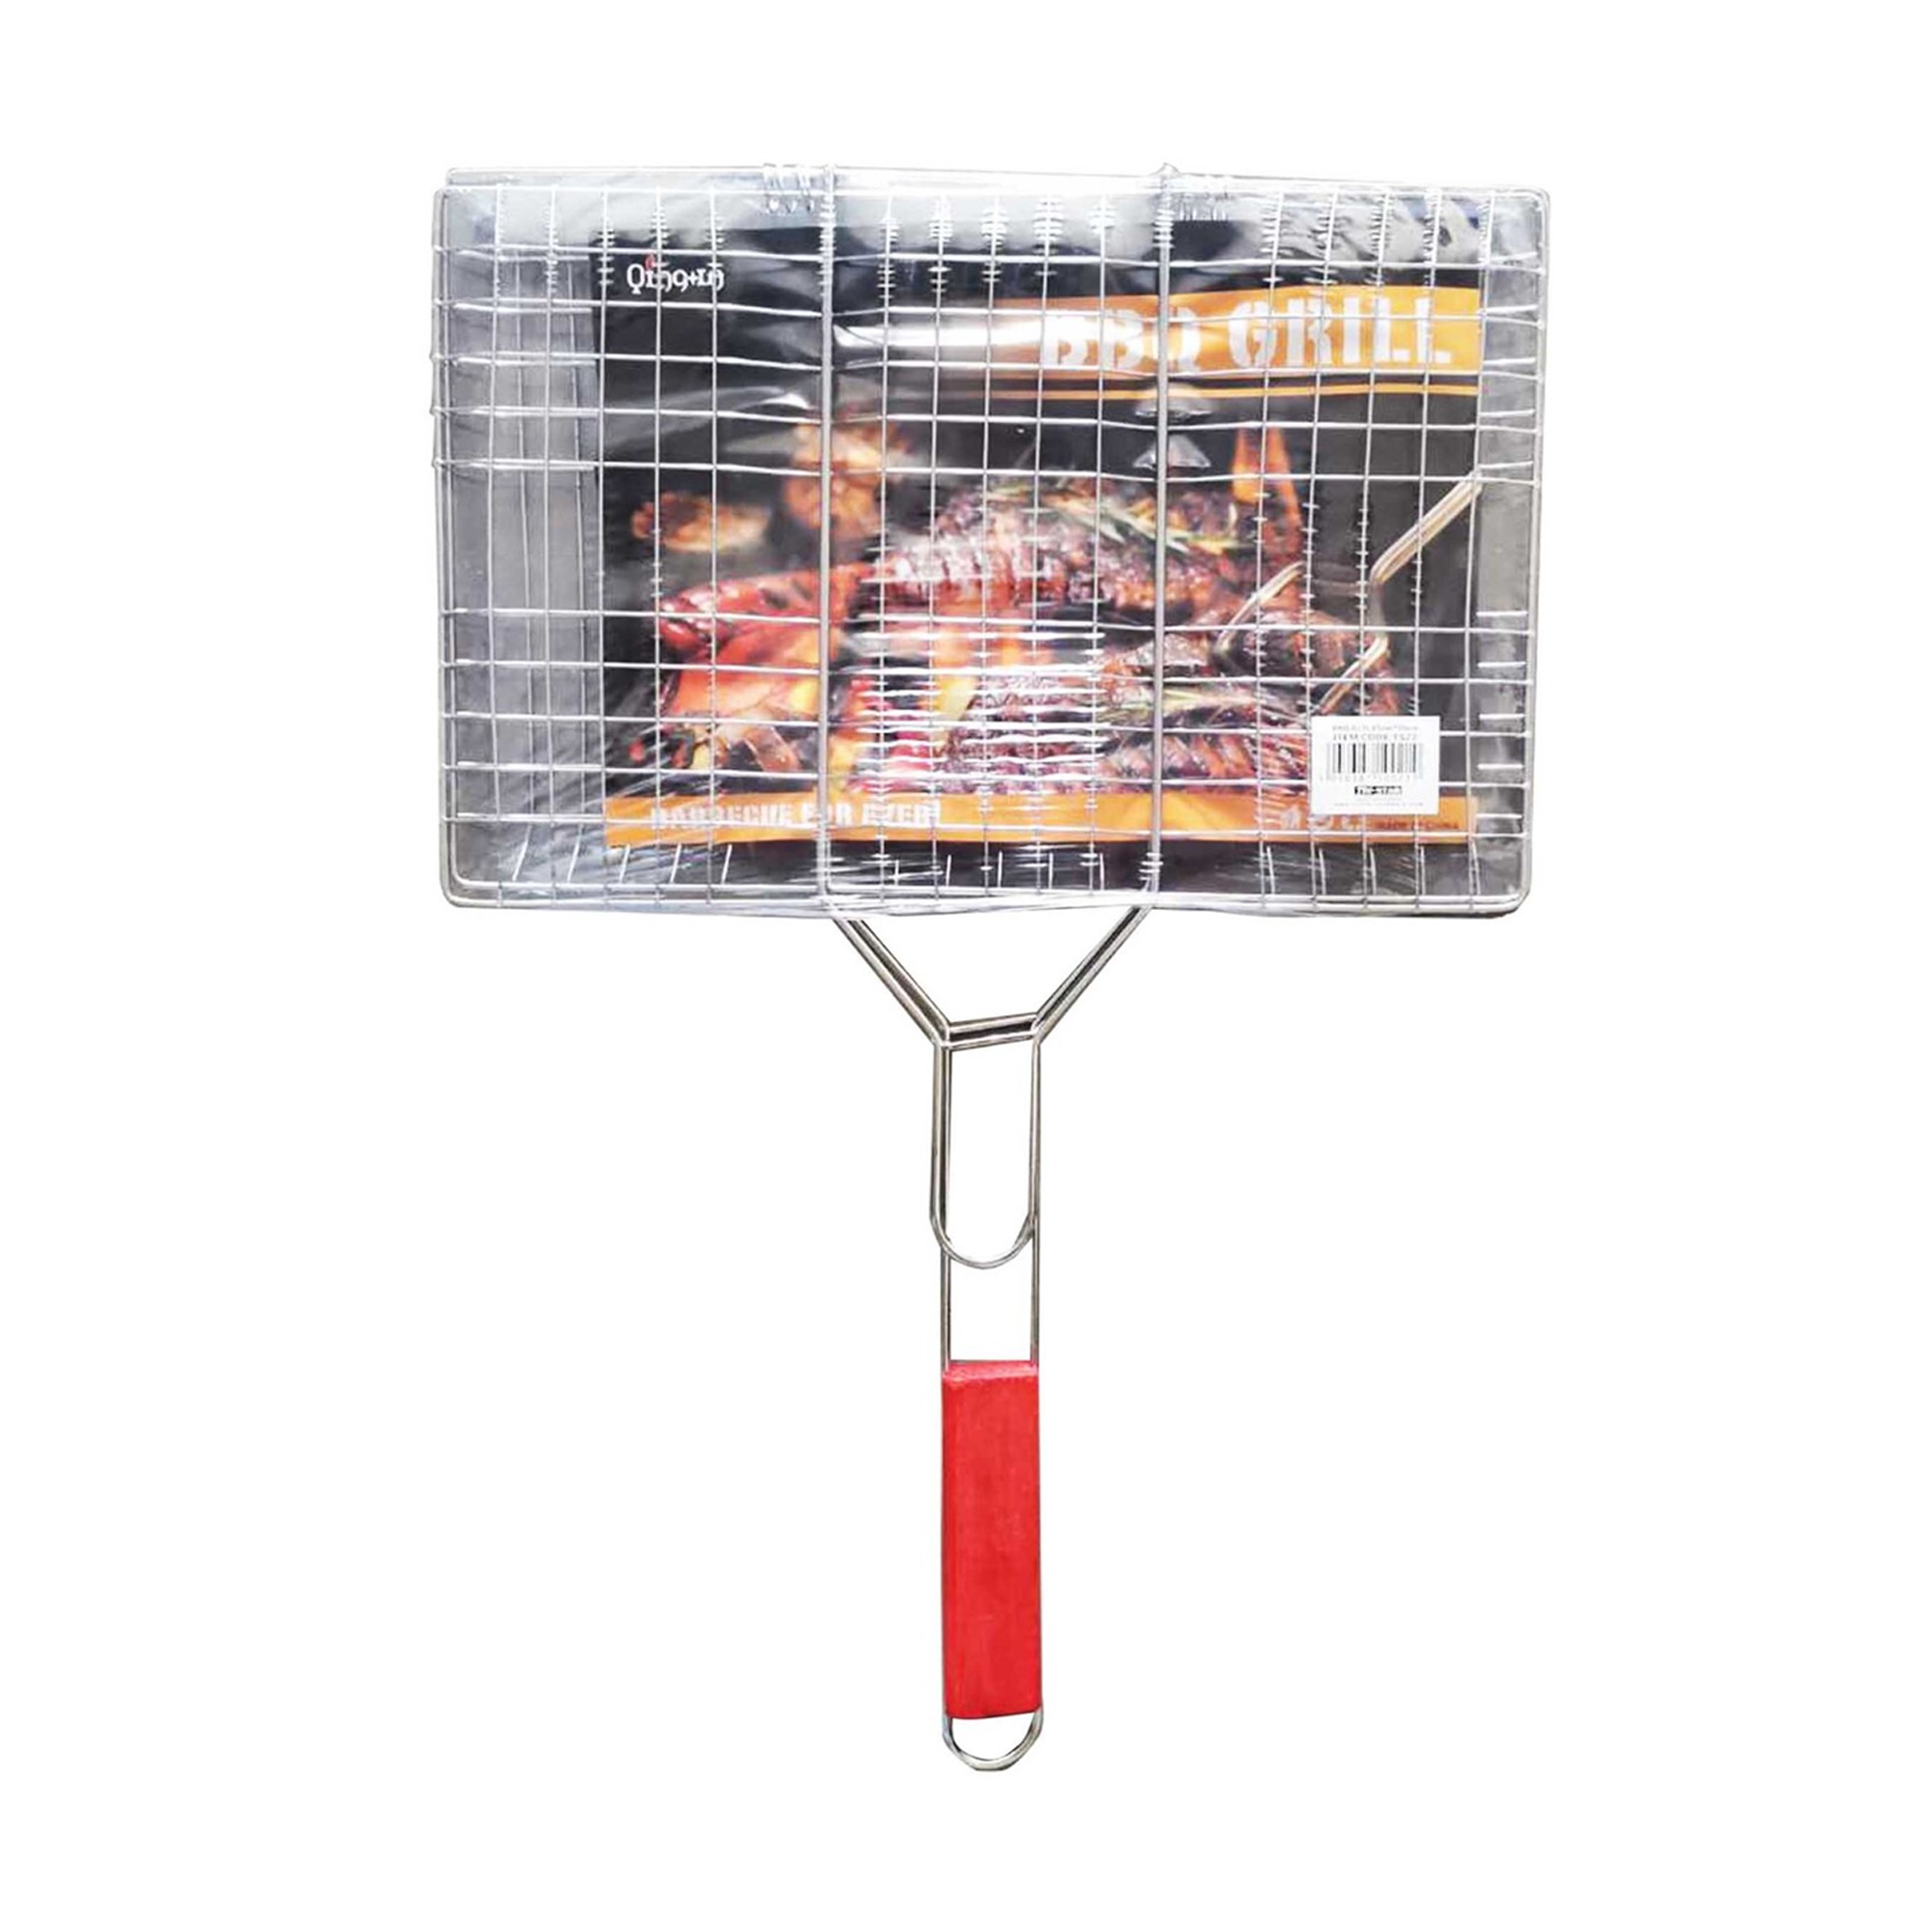 Barbecue Grill - 23 cm X 35 cm